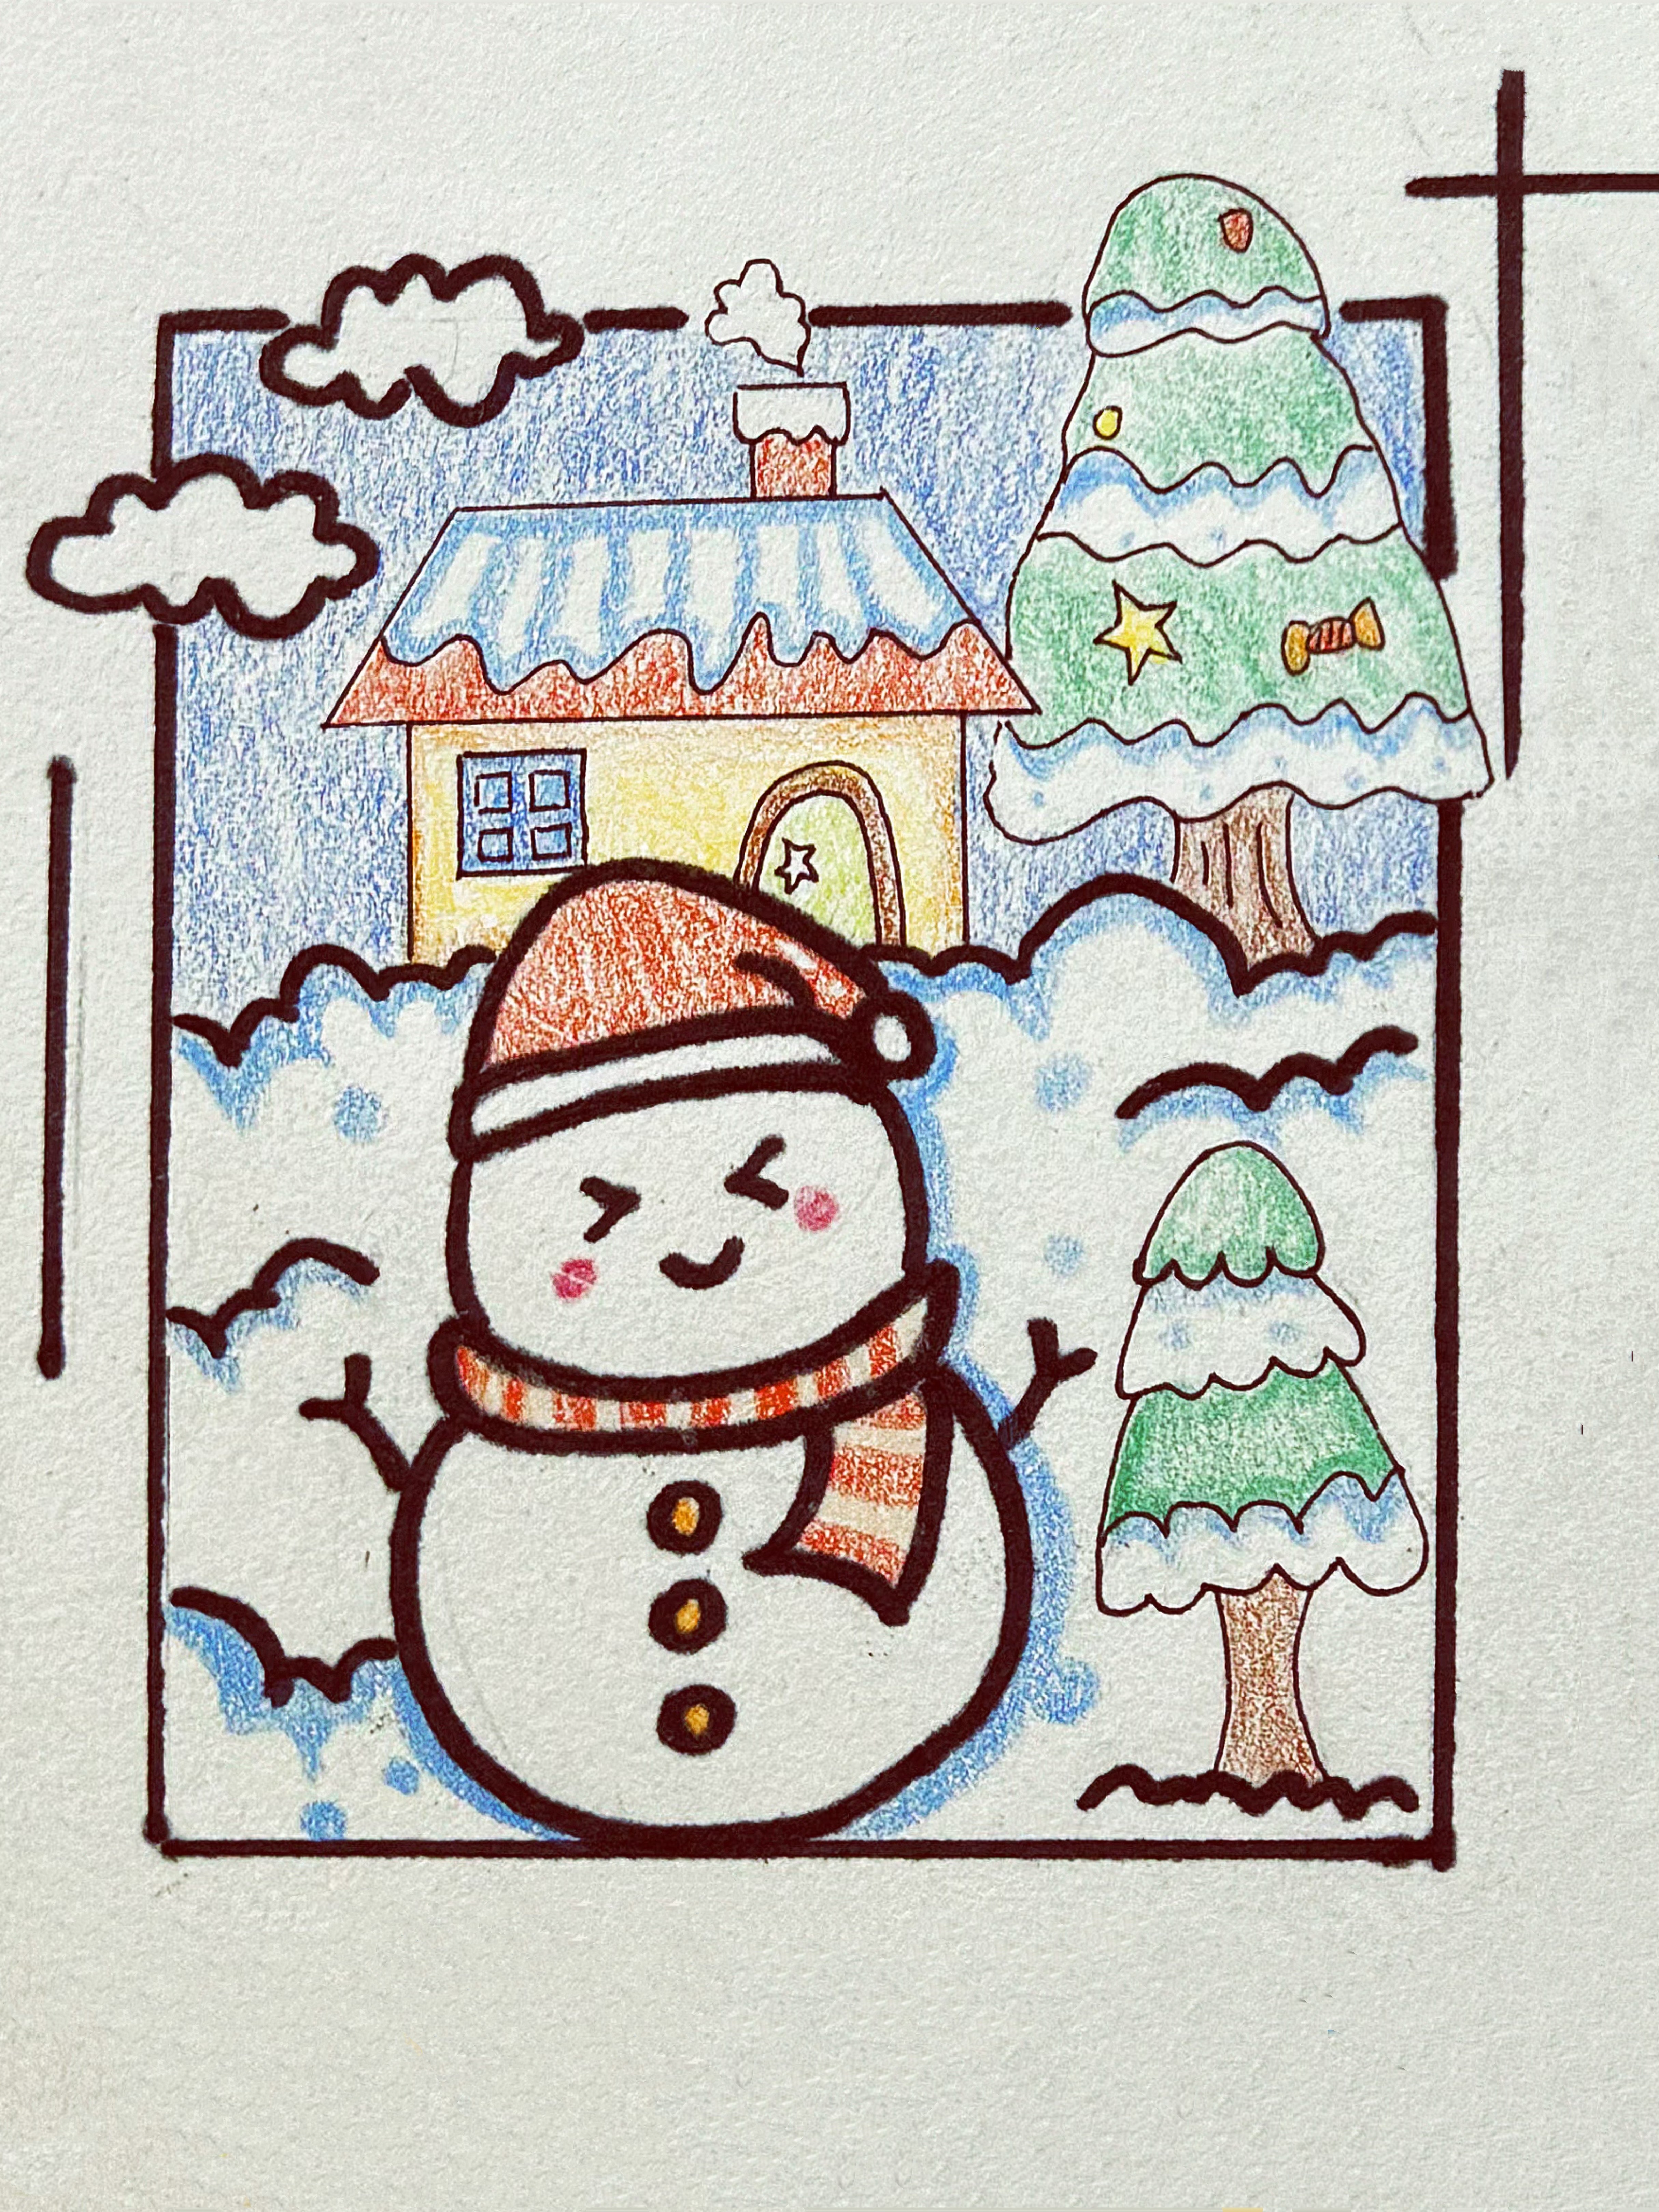 雪人被描绘成了一个可爱的形象，站在画面的左中央，头戴帽子，身上围着围巾，它的出现让人感受到了冬季的寒冷和纯洁。